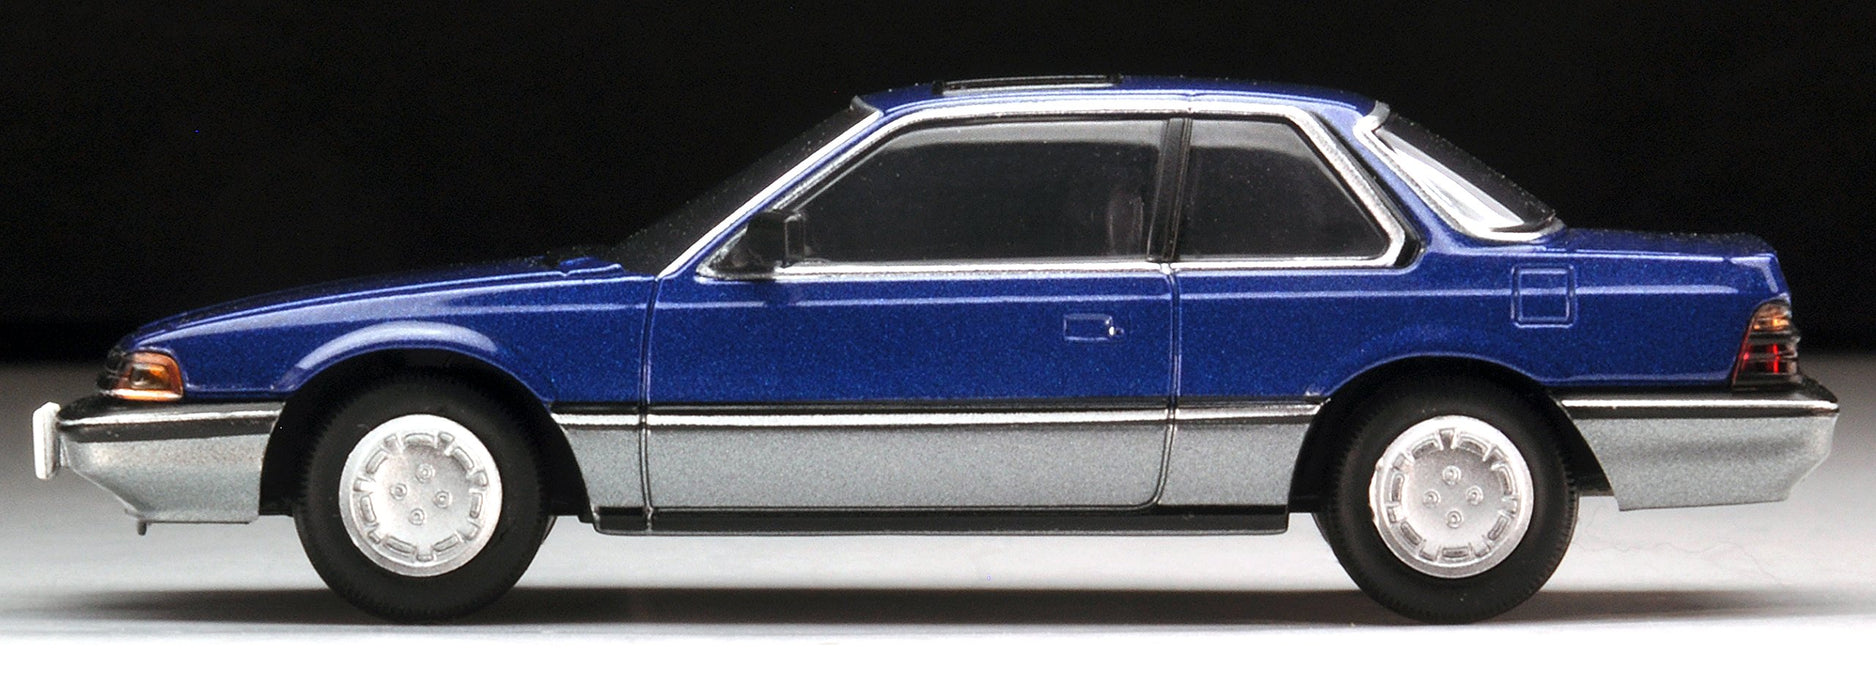 Tomytec Tomica Limited Vintage Neo Lv-N145D Honda Prelude Xx 84 Blau/Grau Maßstab 1/64